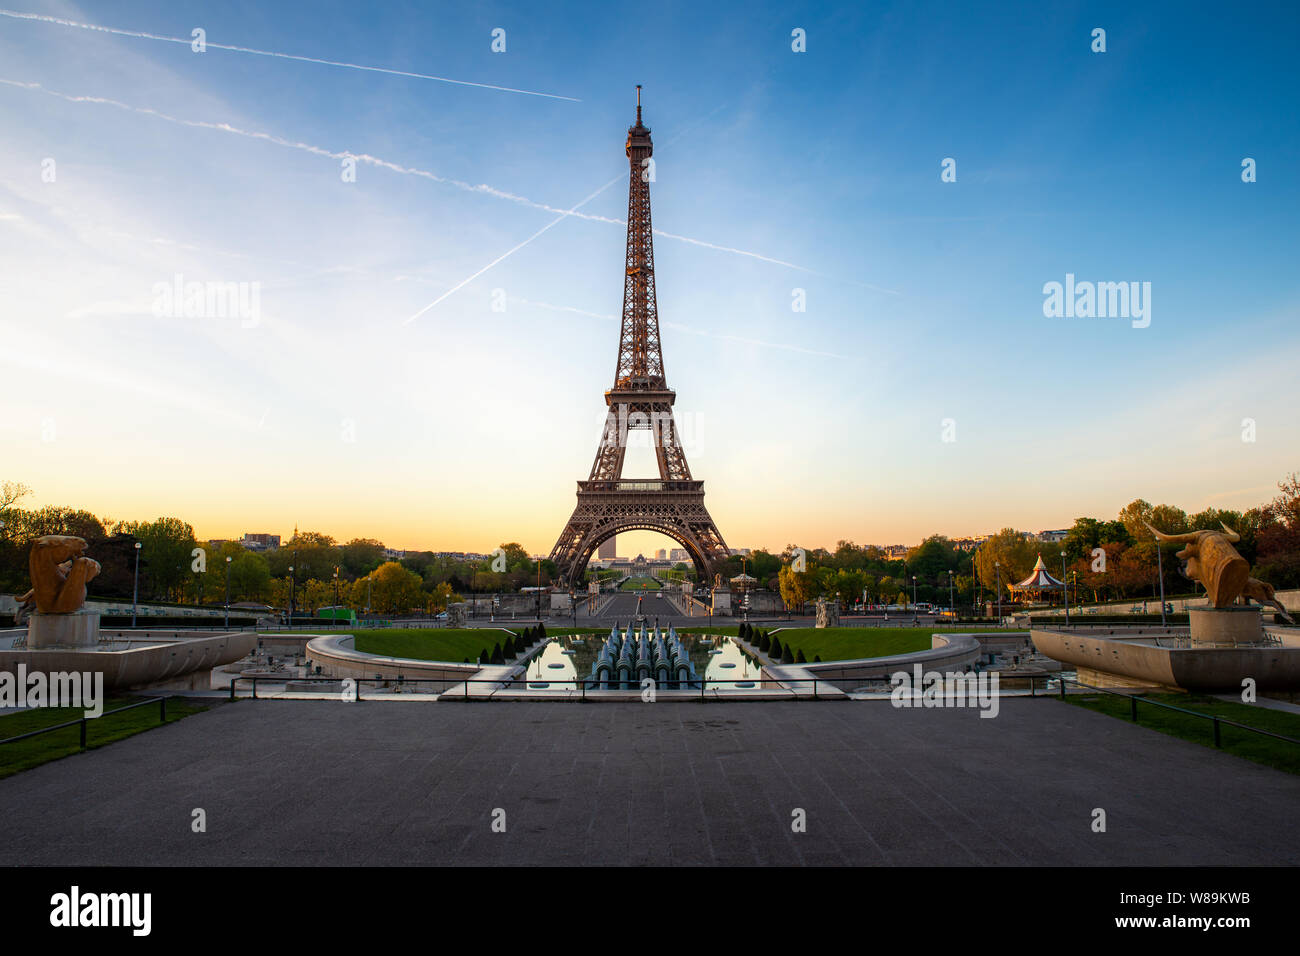 Vue panoramique du paysage sur la Tour Eiffel et le parc pendant la journée ensoleillée à Paris, France. Voyages et vacances. Banque D'Images